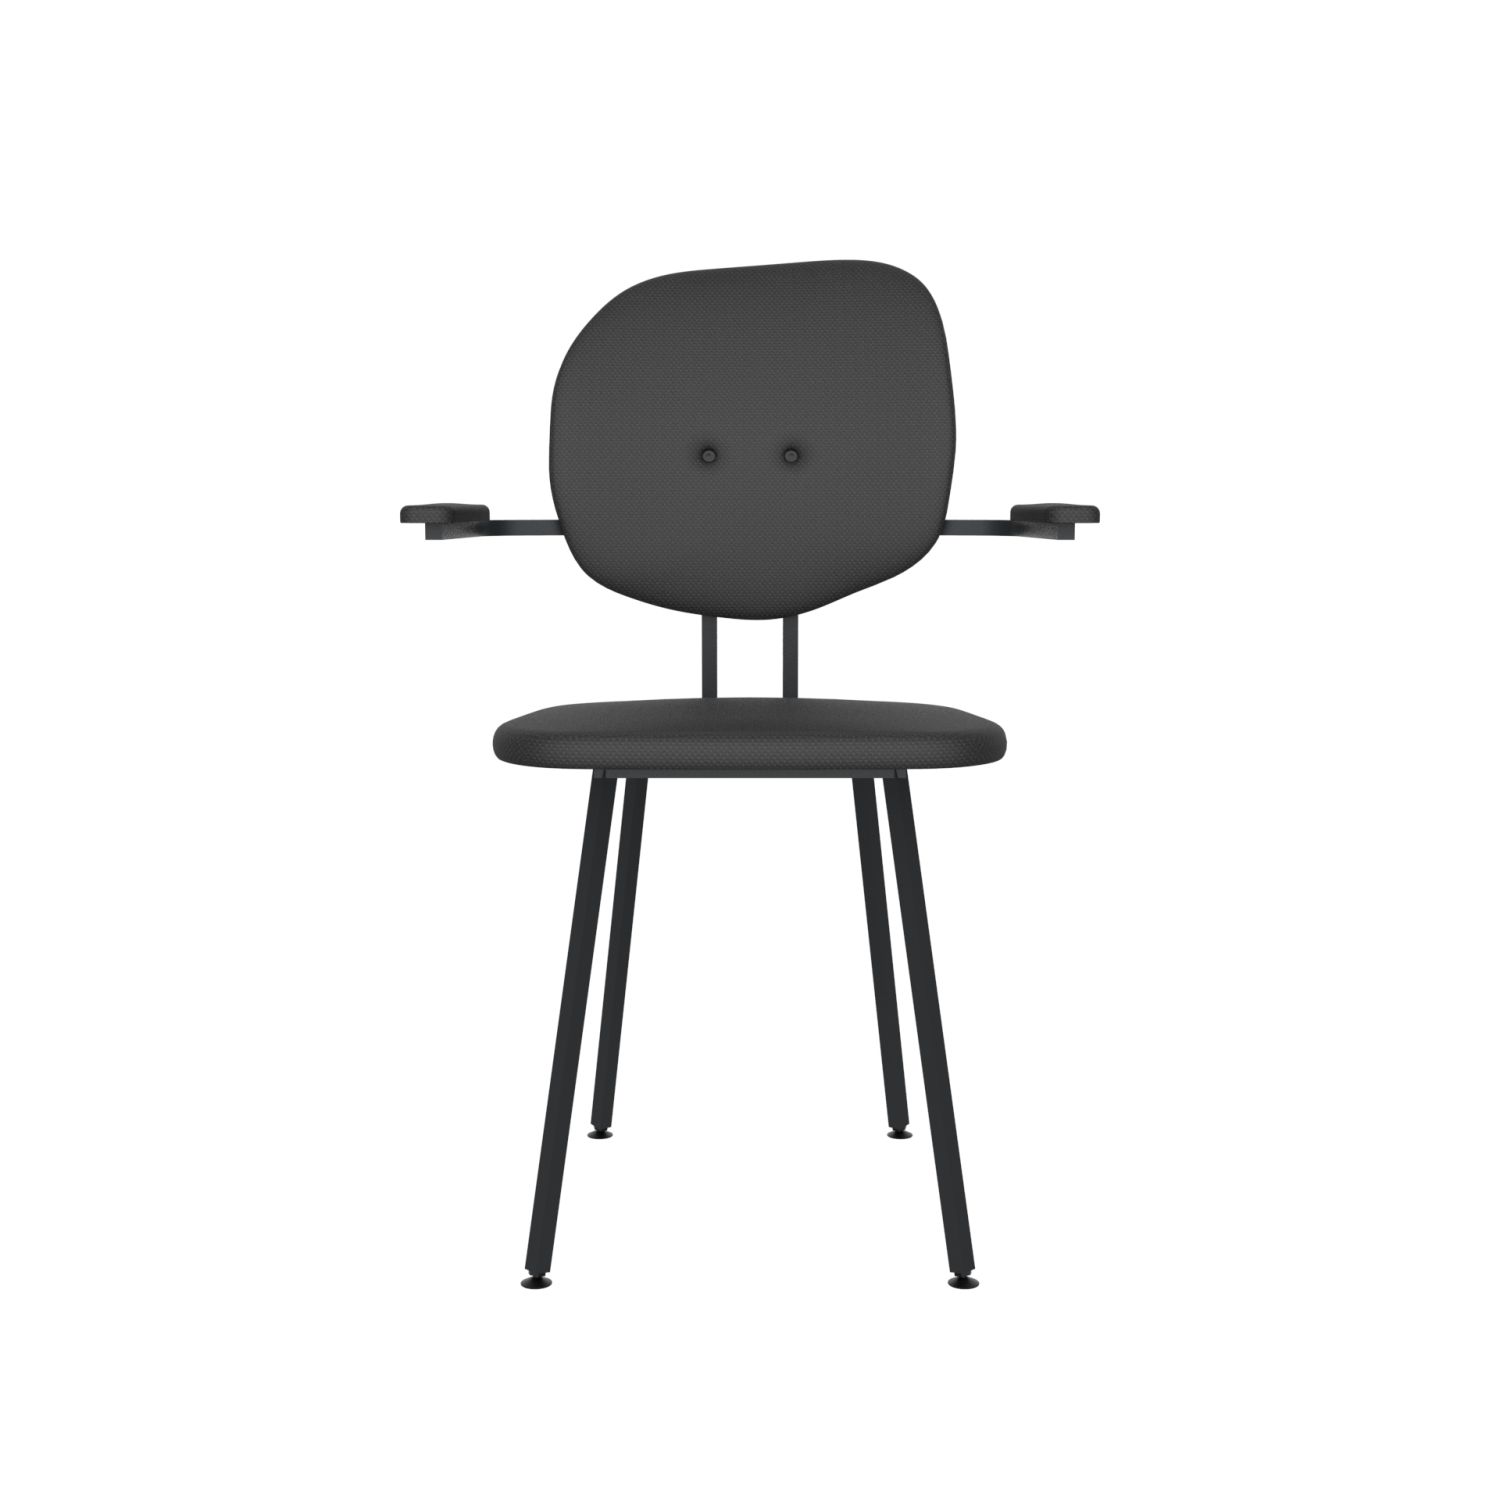 lensvelt maarten baas chair 102 not stackable with armrests backrest h havana black 090 black ral9005 hard leg ends